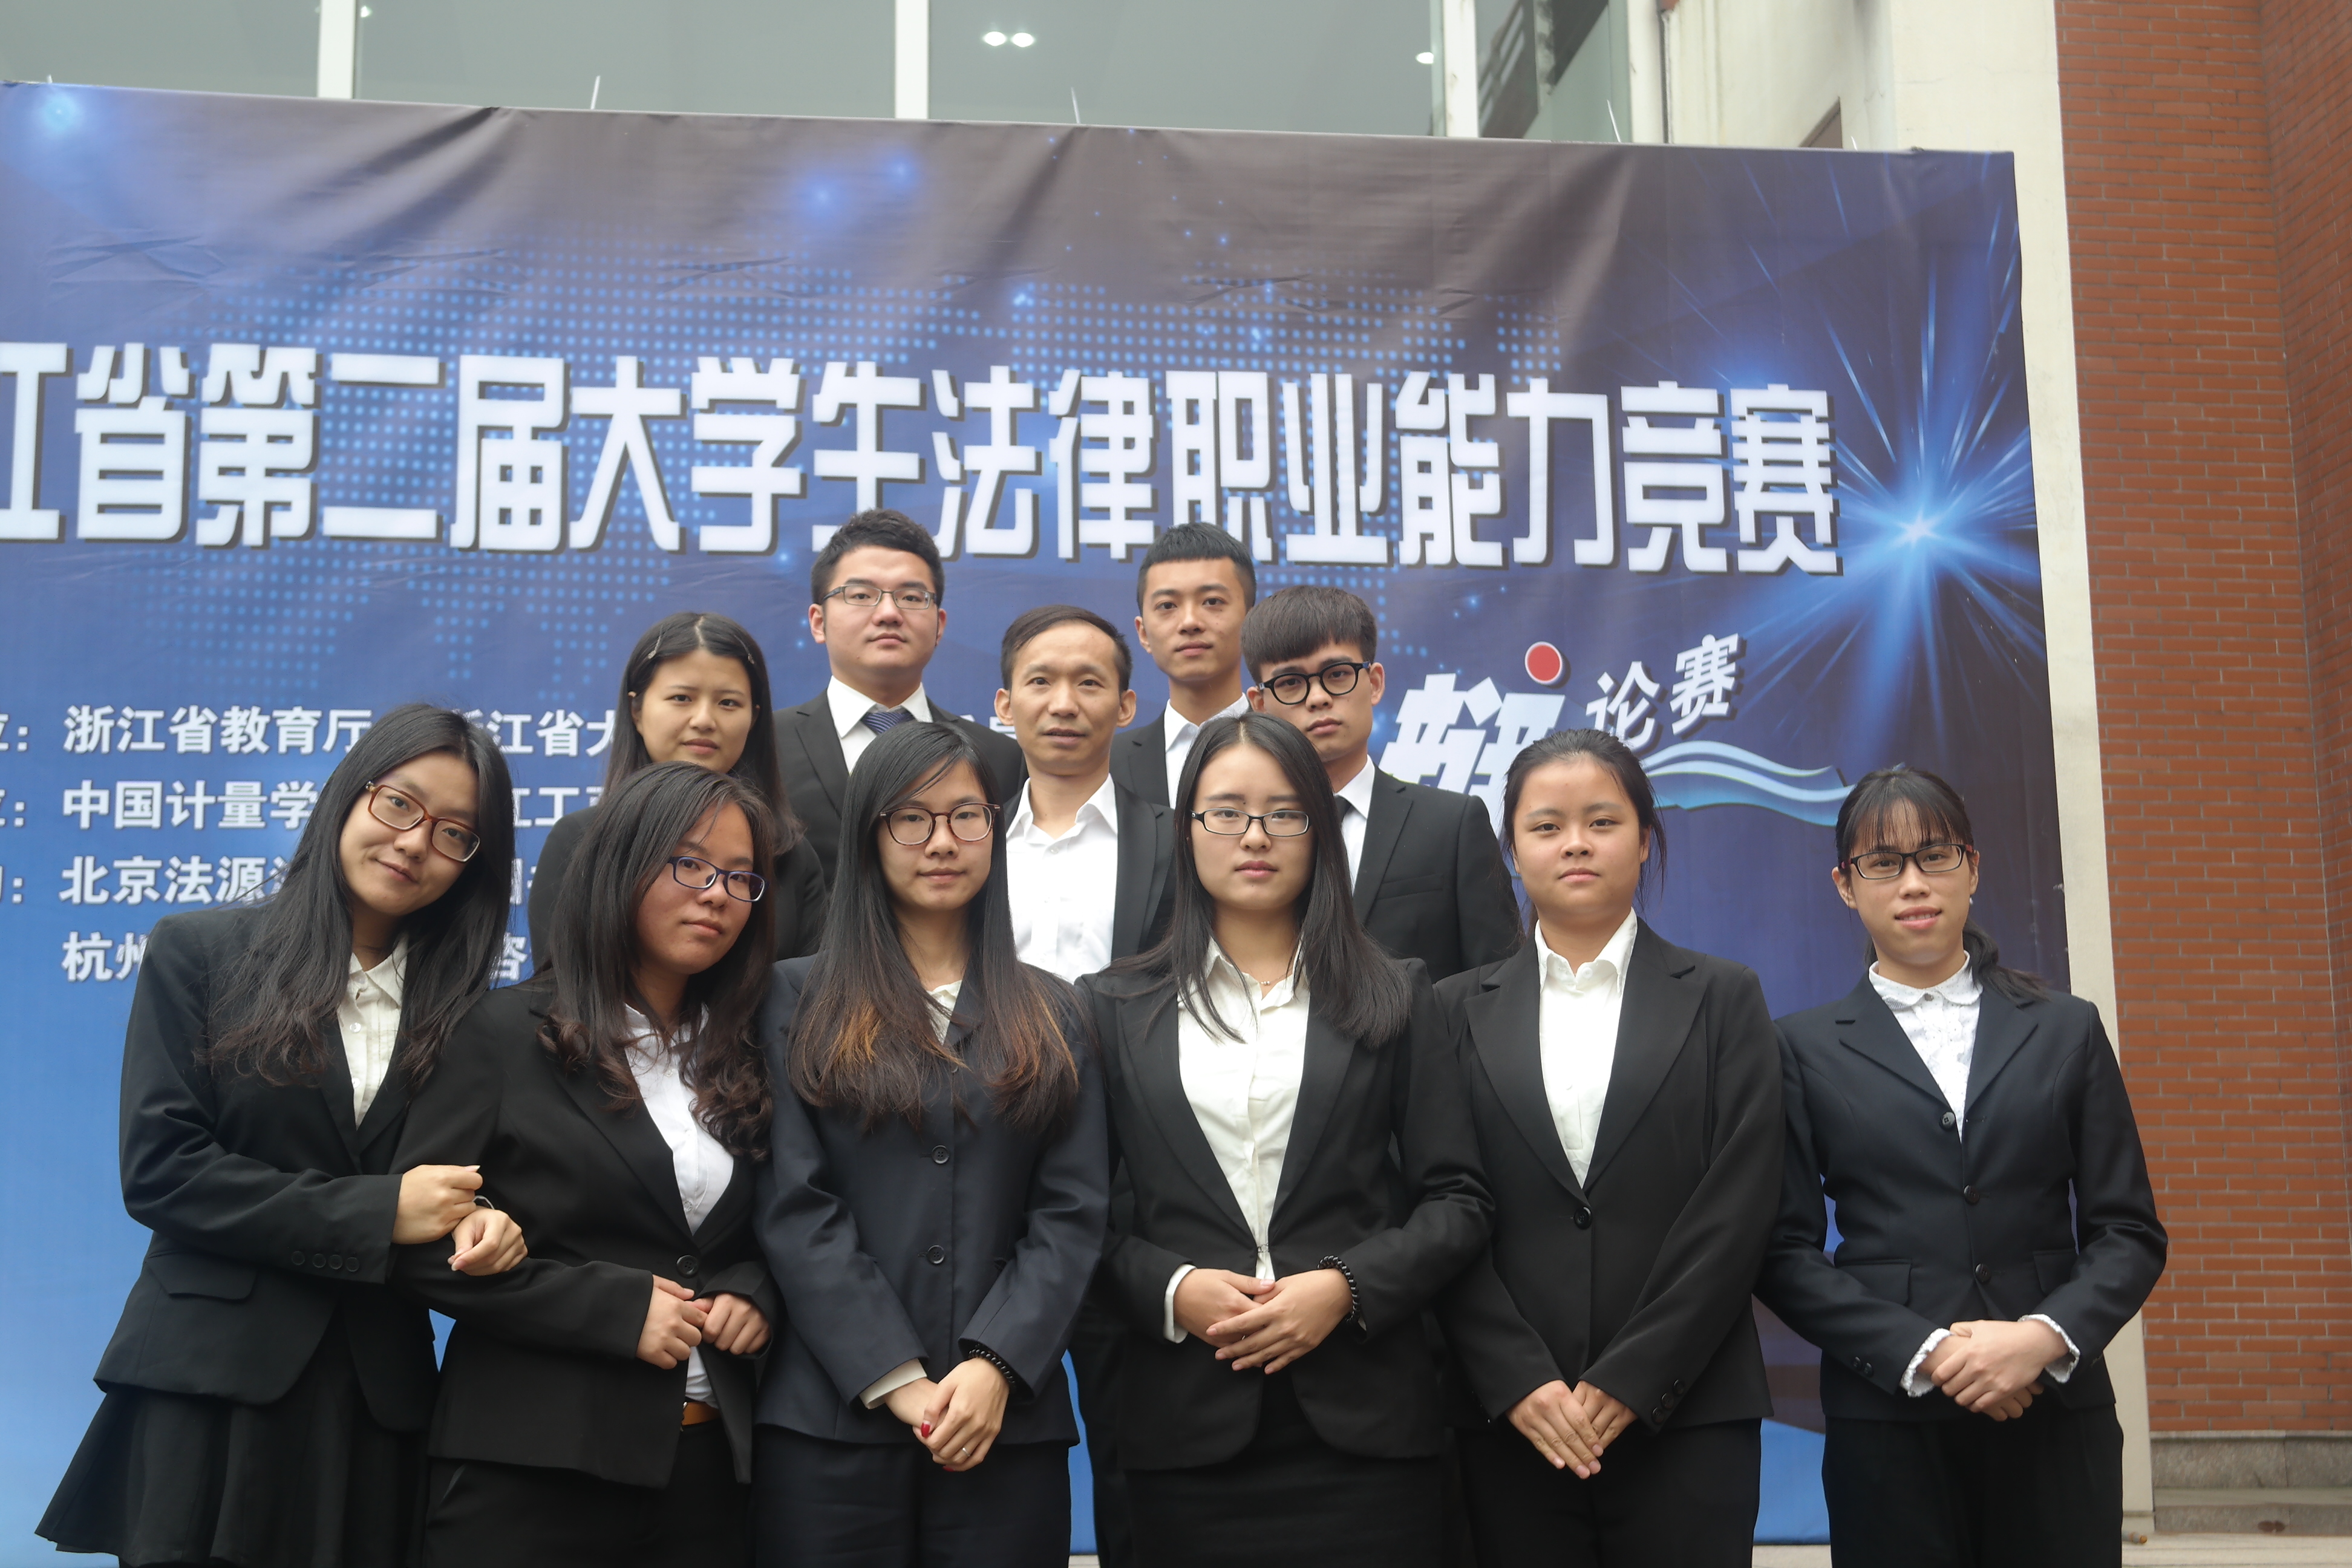 參加浙江省第二屆大學生法律職業技能大賽